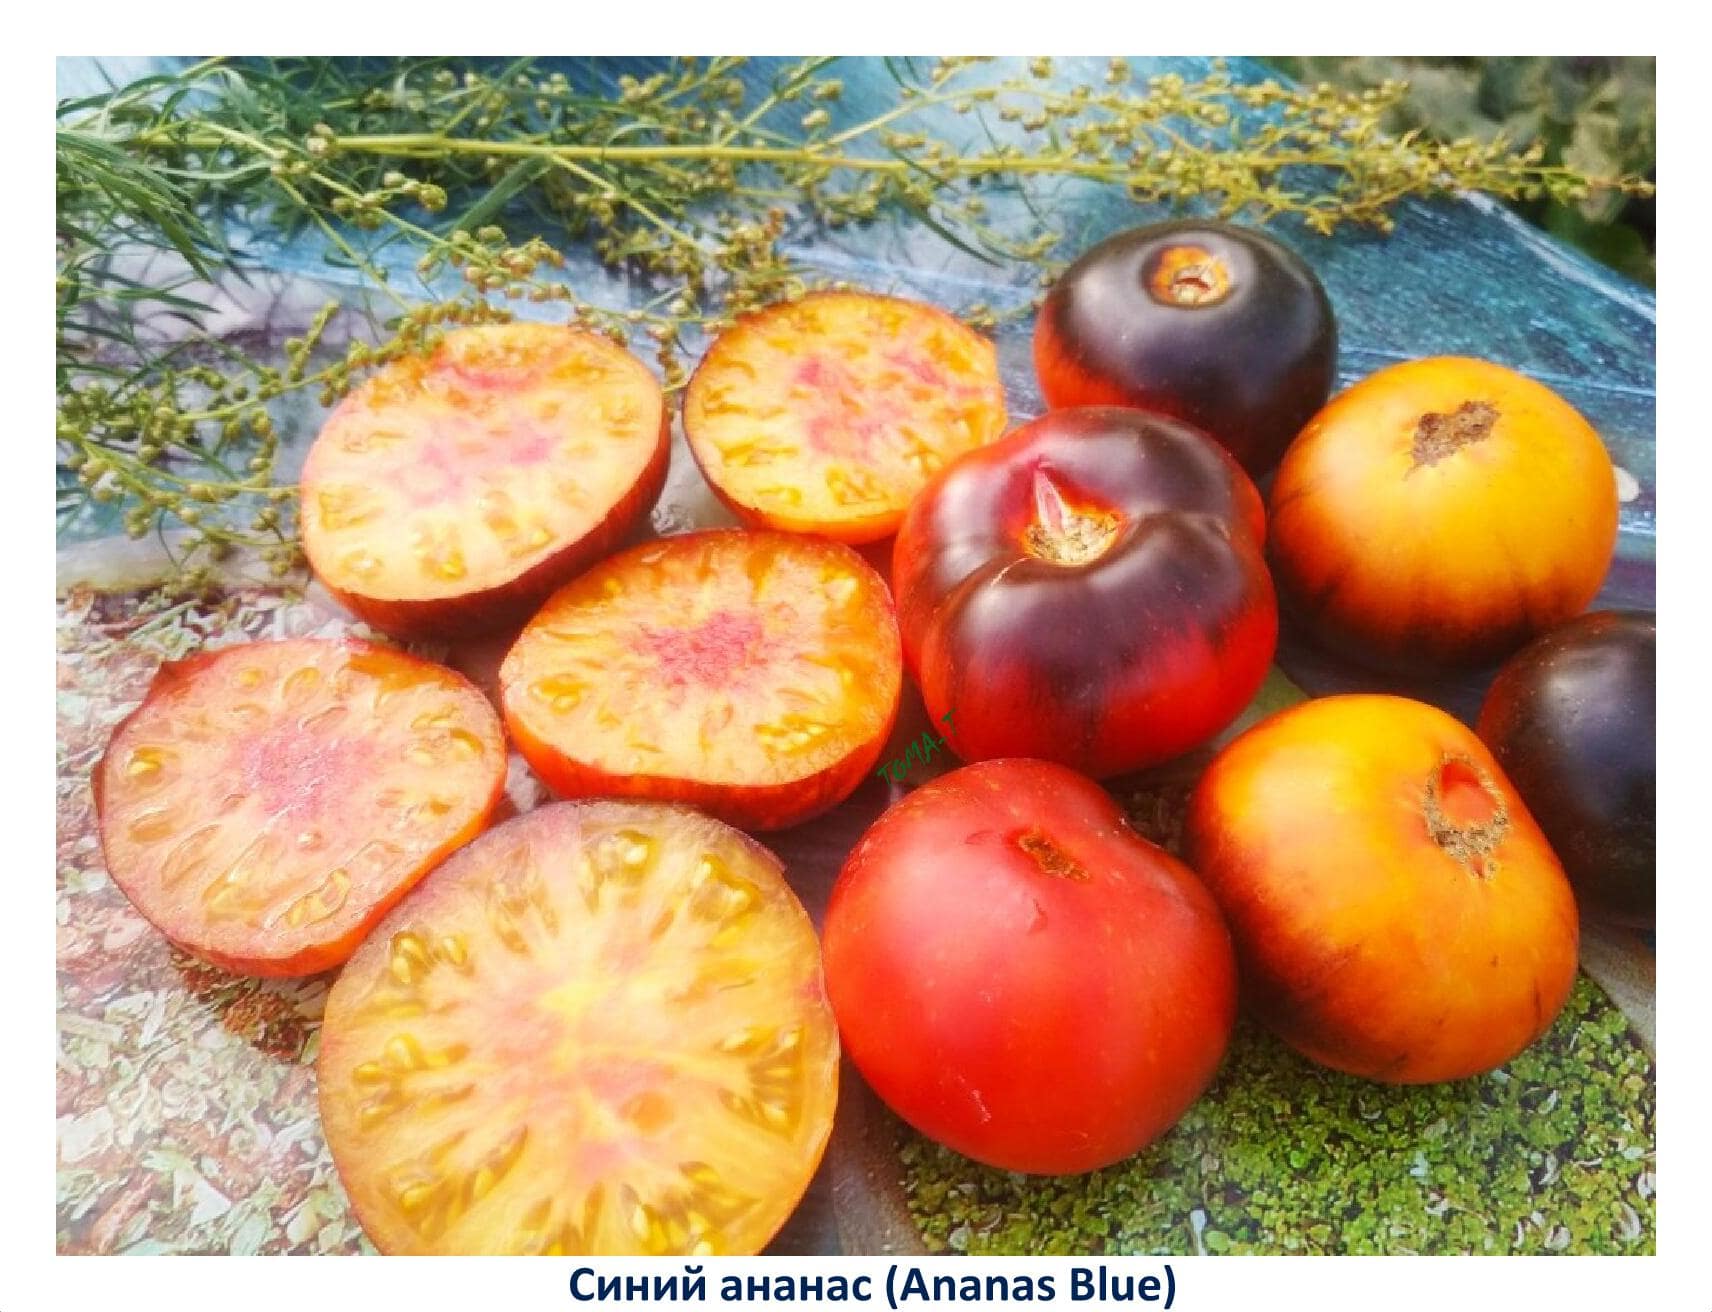 Описание и характеристика томата Синий ананас, отзывы, фото